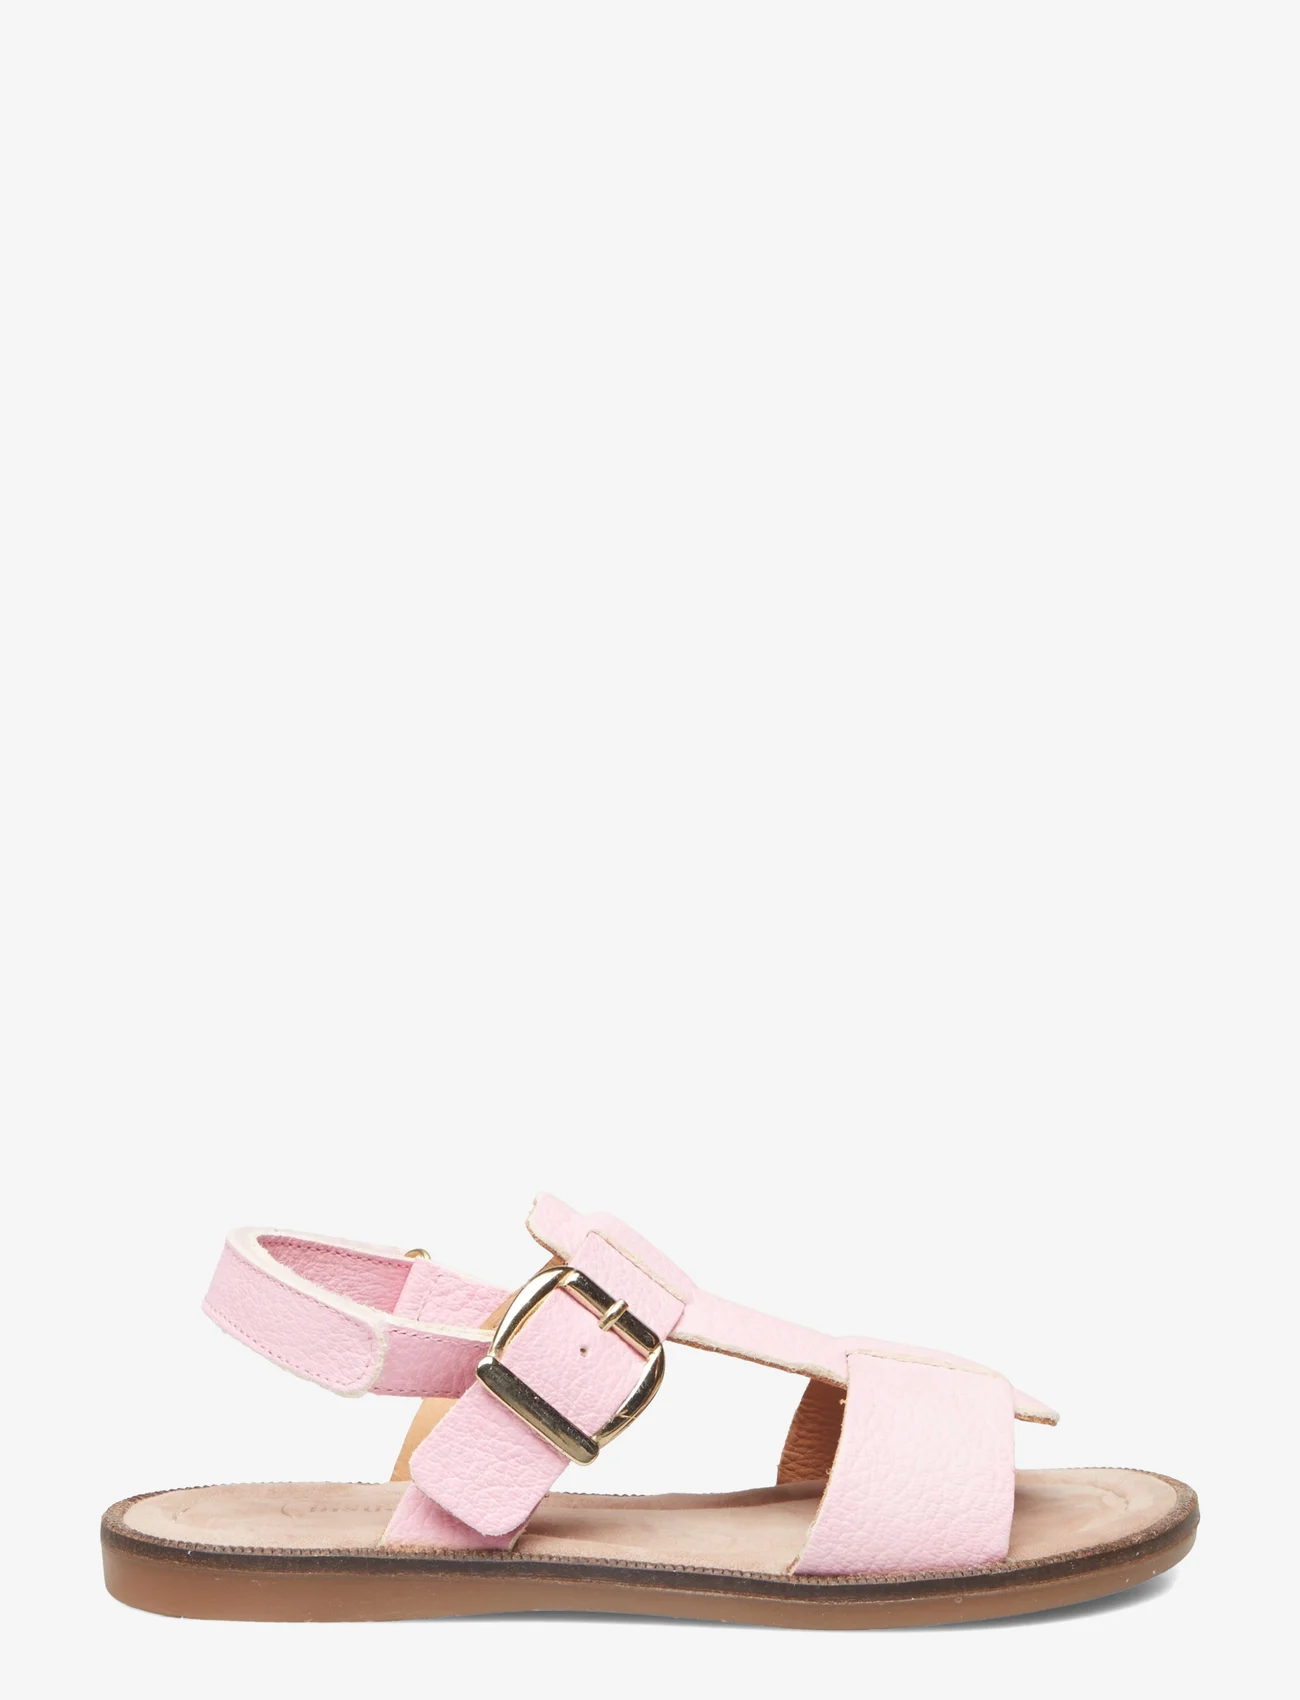 Bisgaard - bisgaard adea - sandals - pink - 1